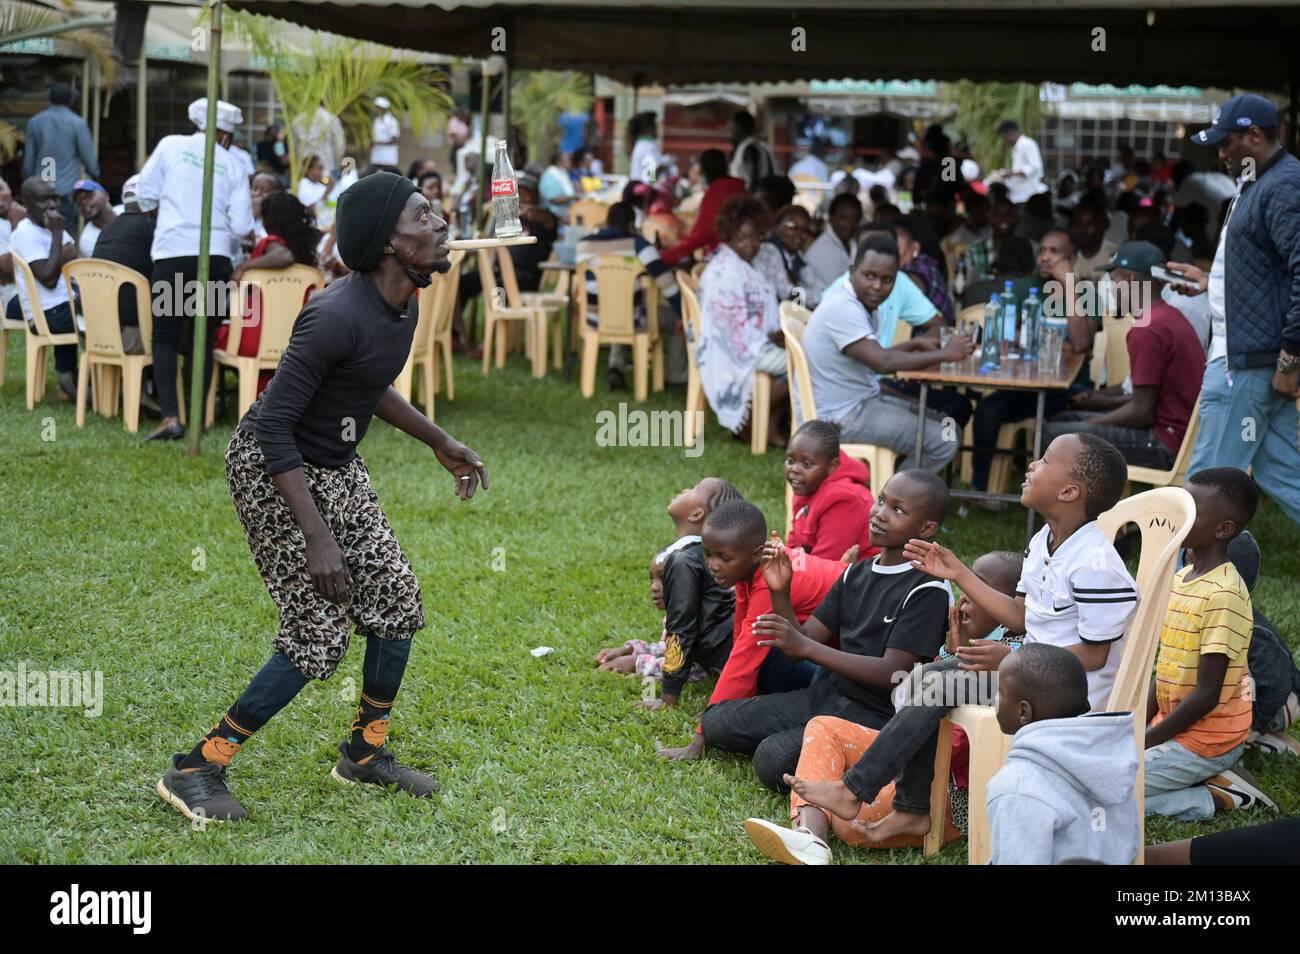 KENYA, Nairobi, middle class in beer garden, acrobatic performance / KENIA, Nairobi, Mittelklasse im Biergarten, akrobatische Vorführung zur Unterhaltung der Gäste Stock Photo